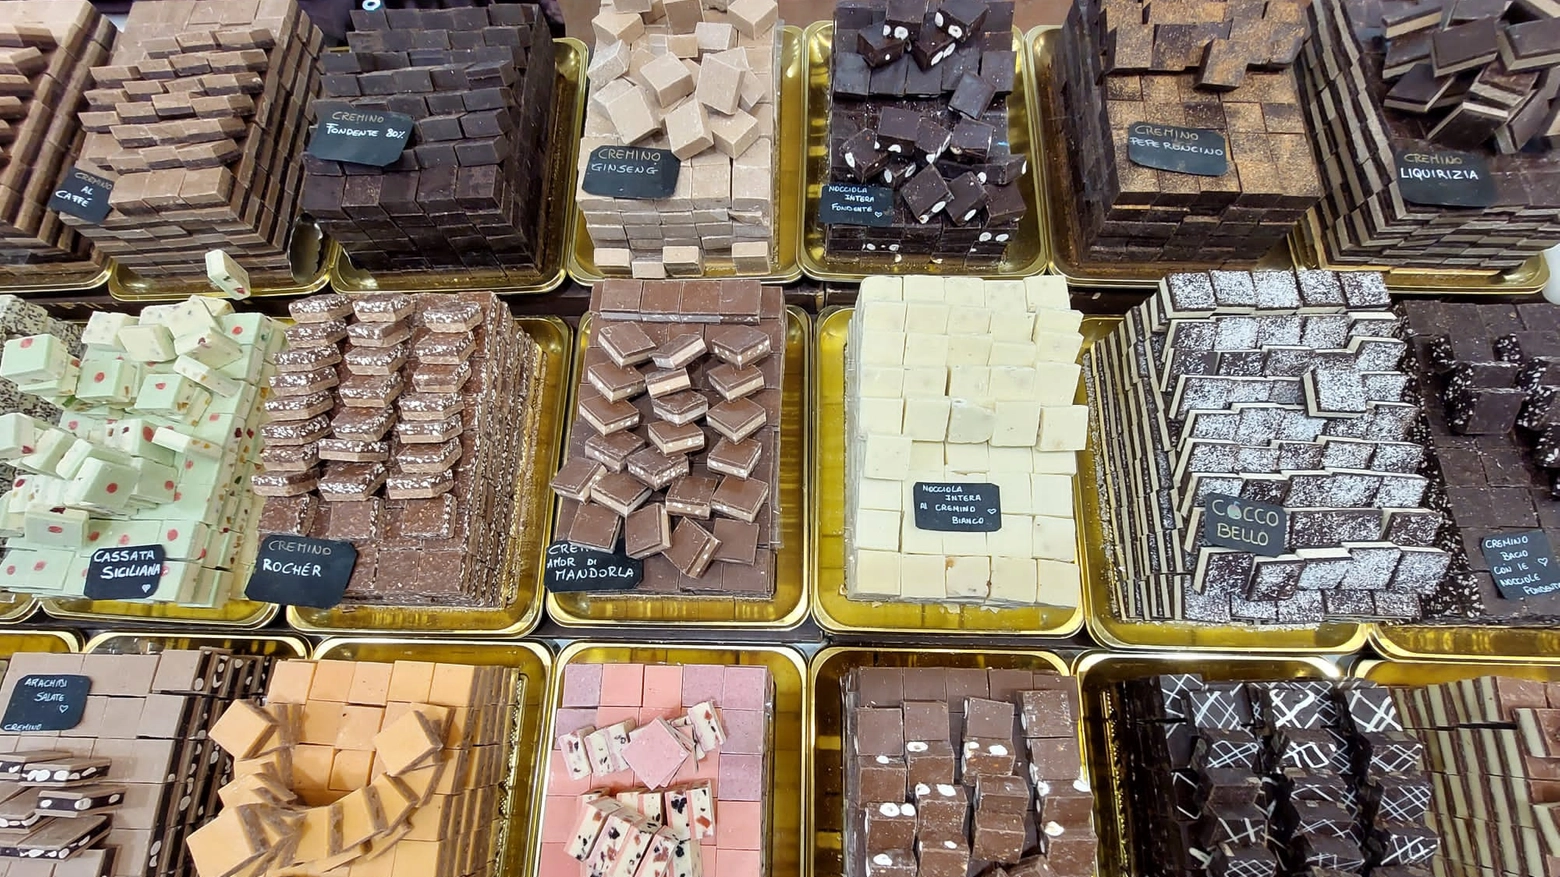 L'8 febbraio avrà inizio "Art & Ciocc", l'evento annuale dedicato al grande cioccolato artigianale italiano